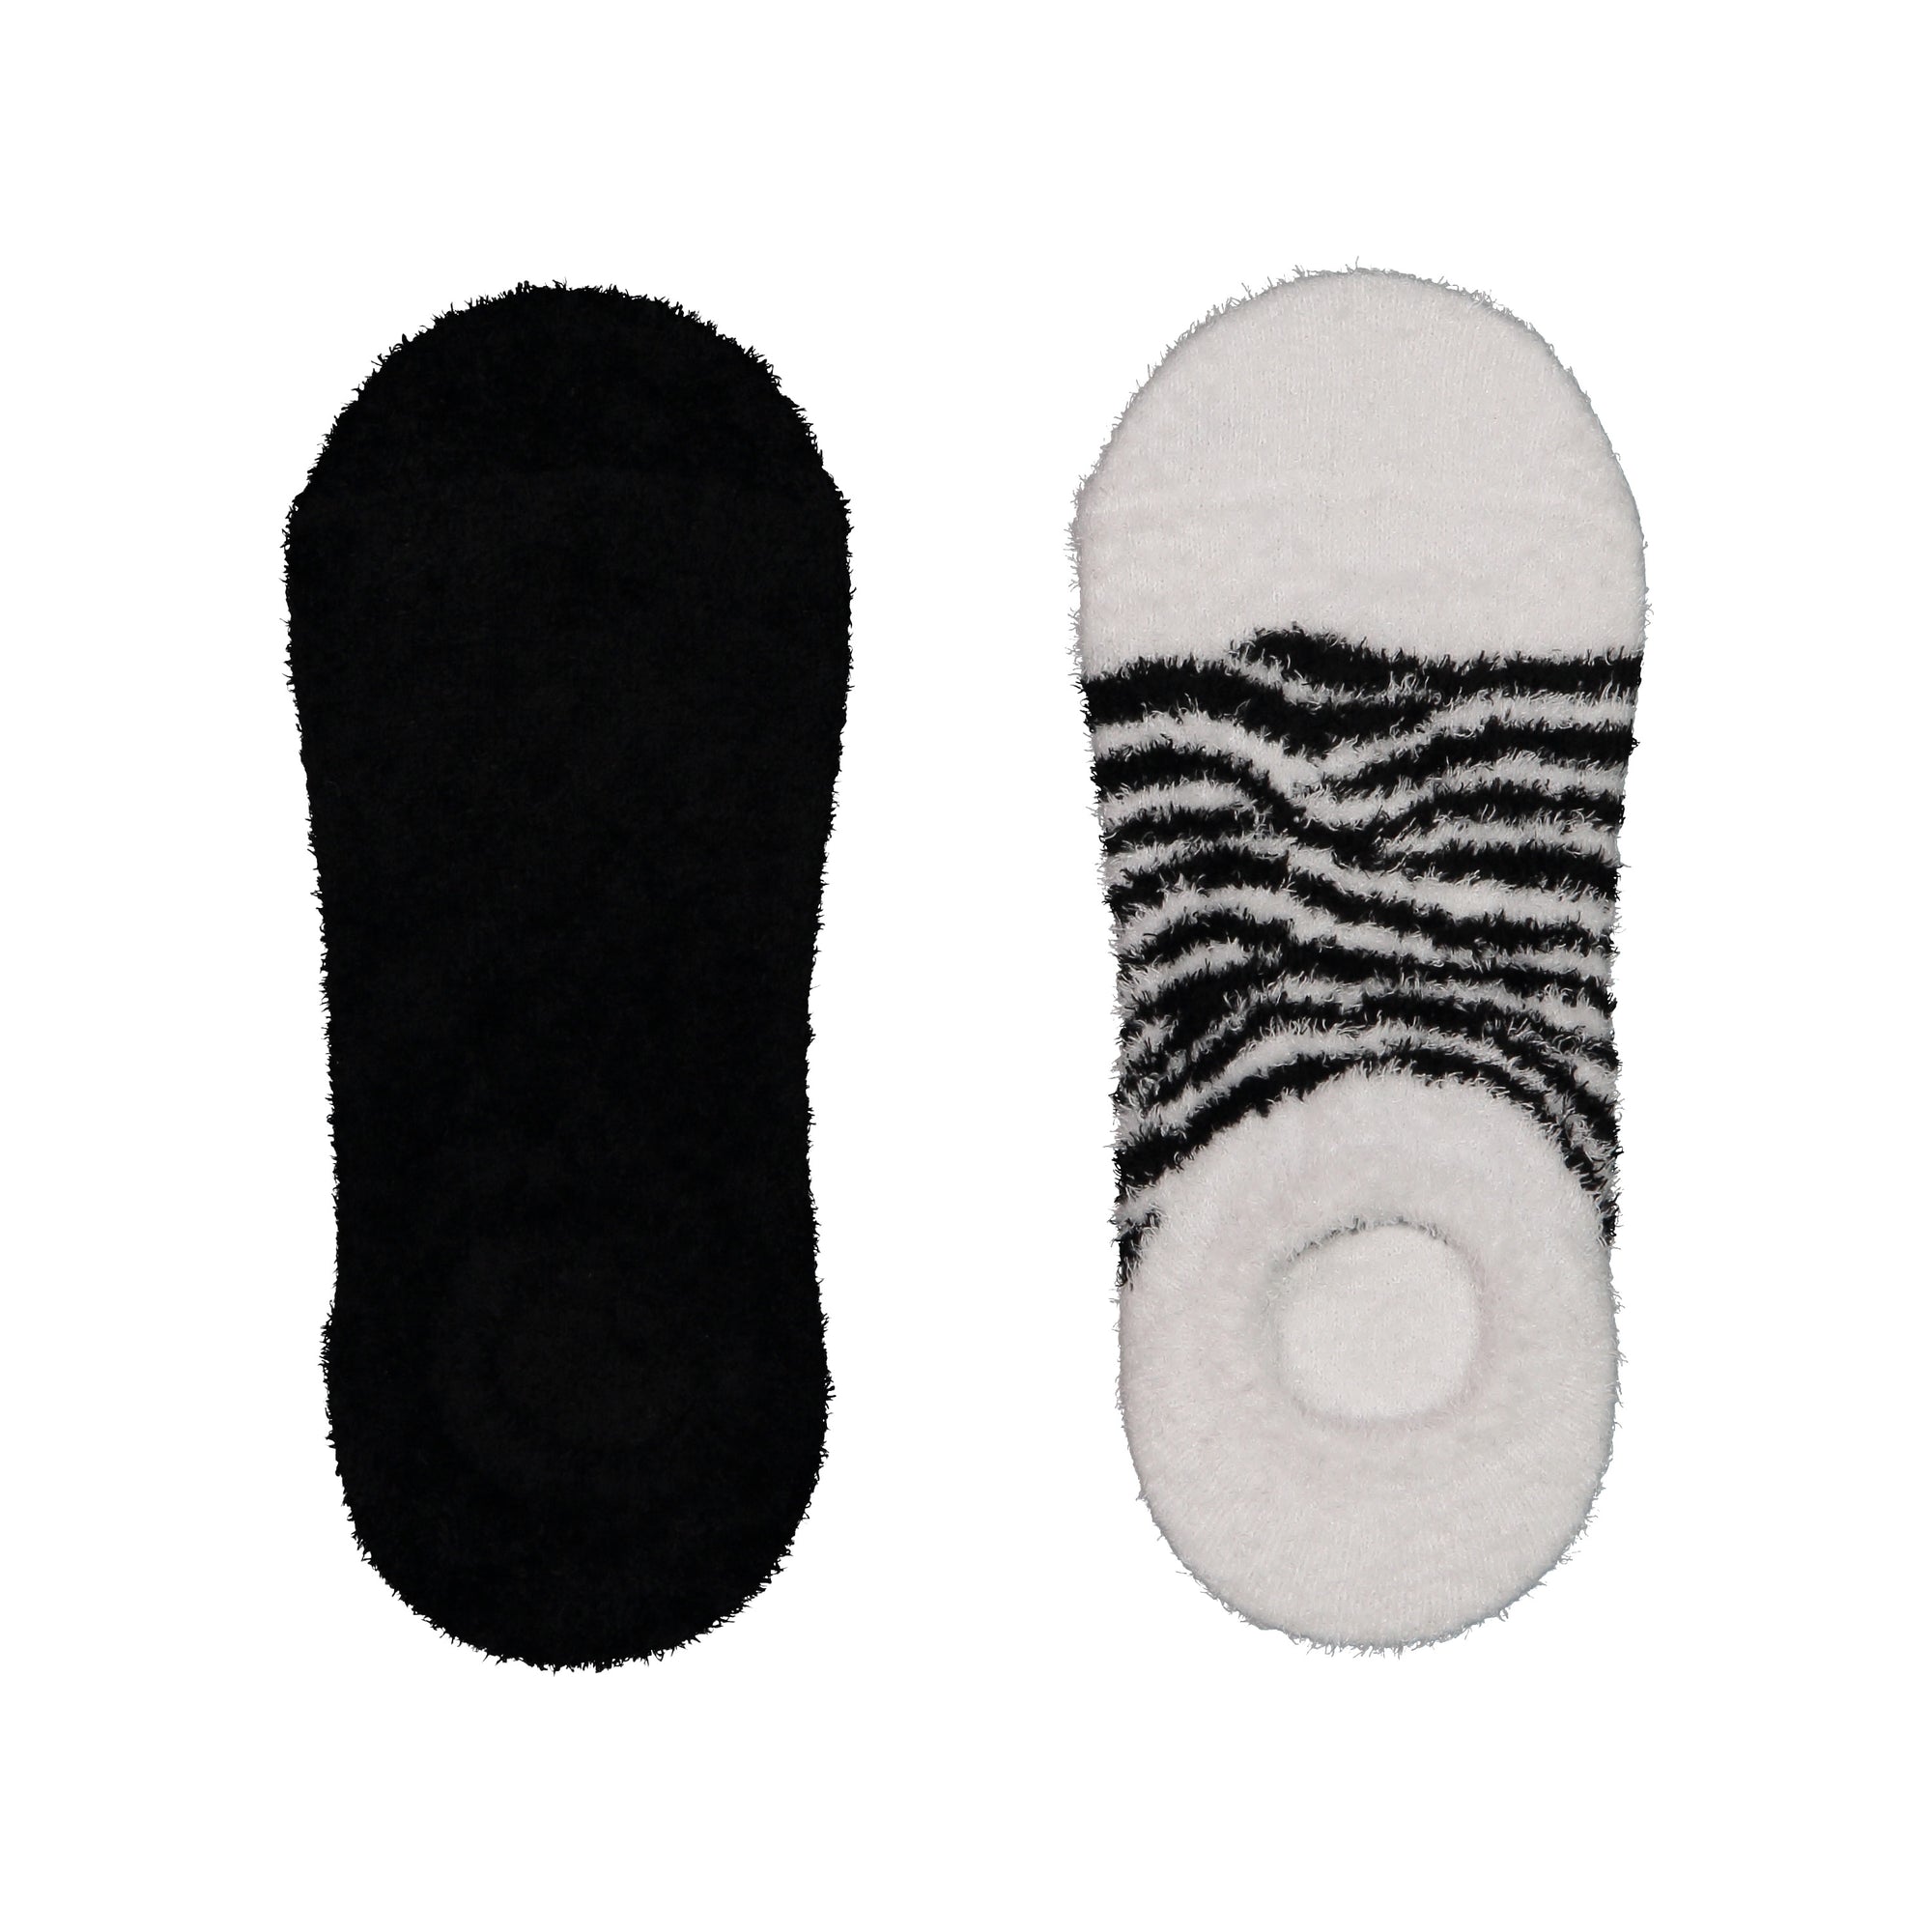 women's socks with grips